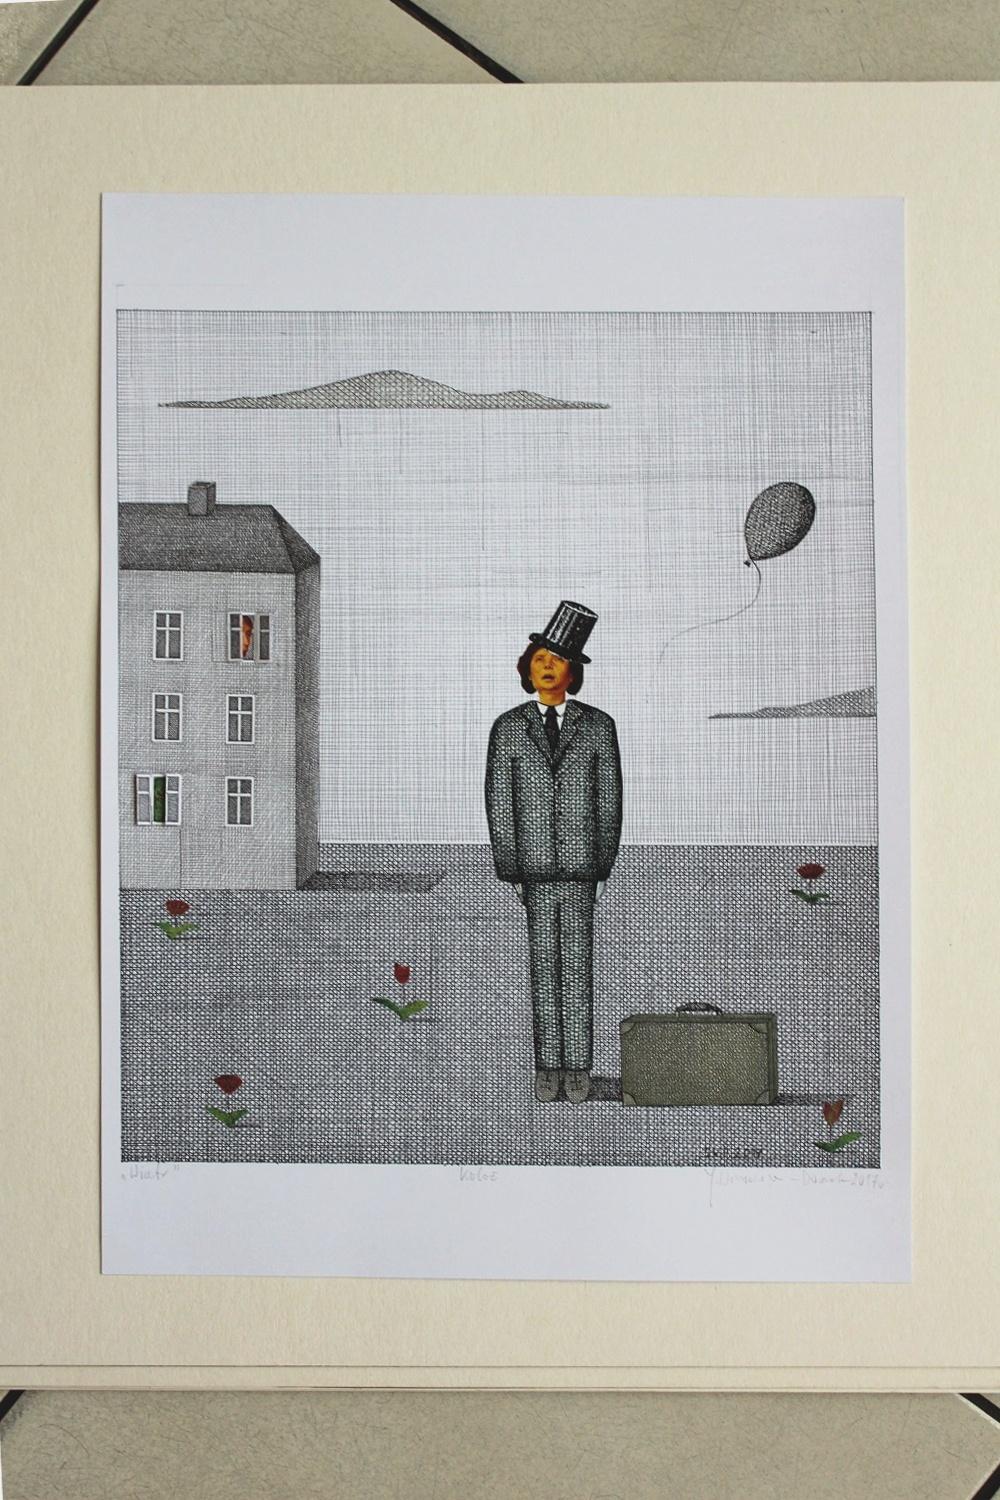 Zeitgenössischer figurativer Druck und Collage des 21. Jahrhunderts, Surrealismus – Art von Joanna Wiszniewska-Domanska